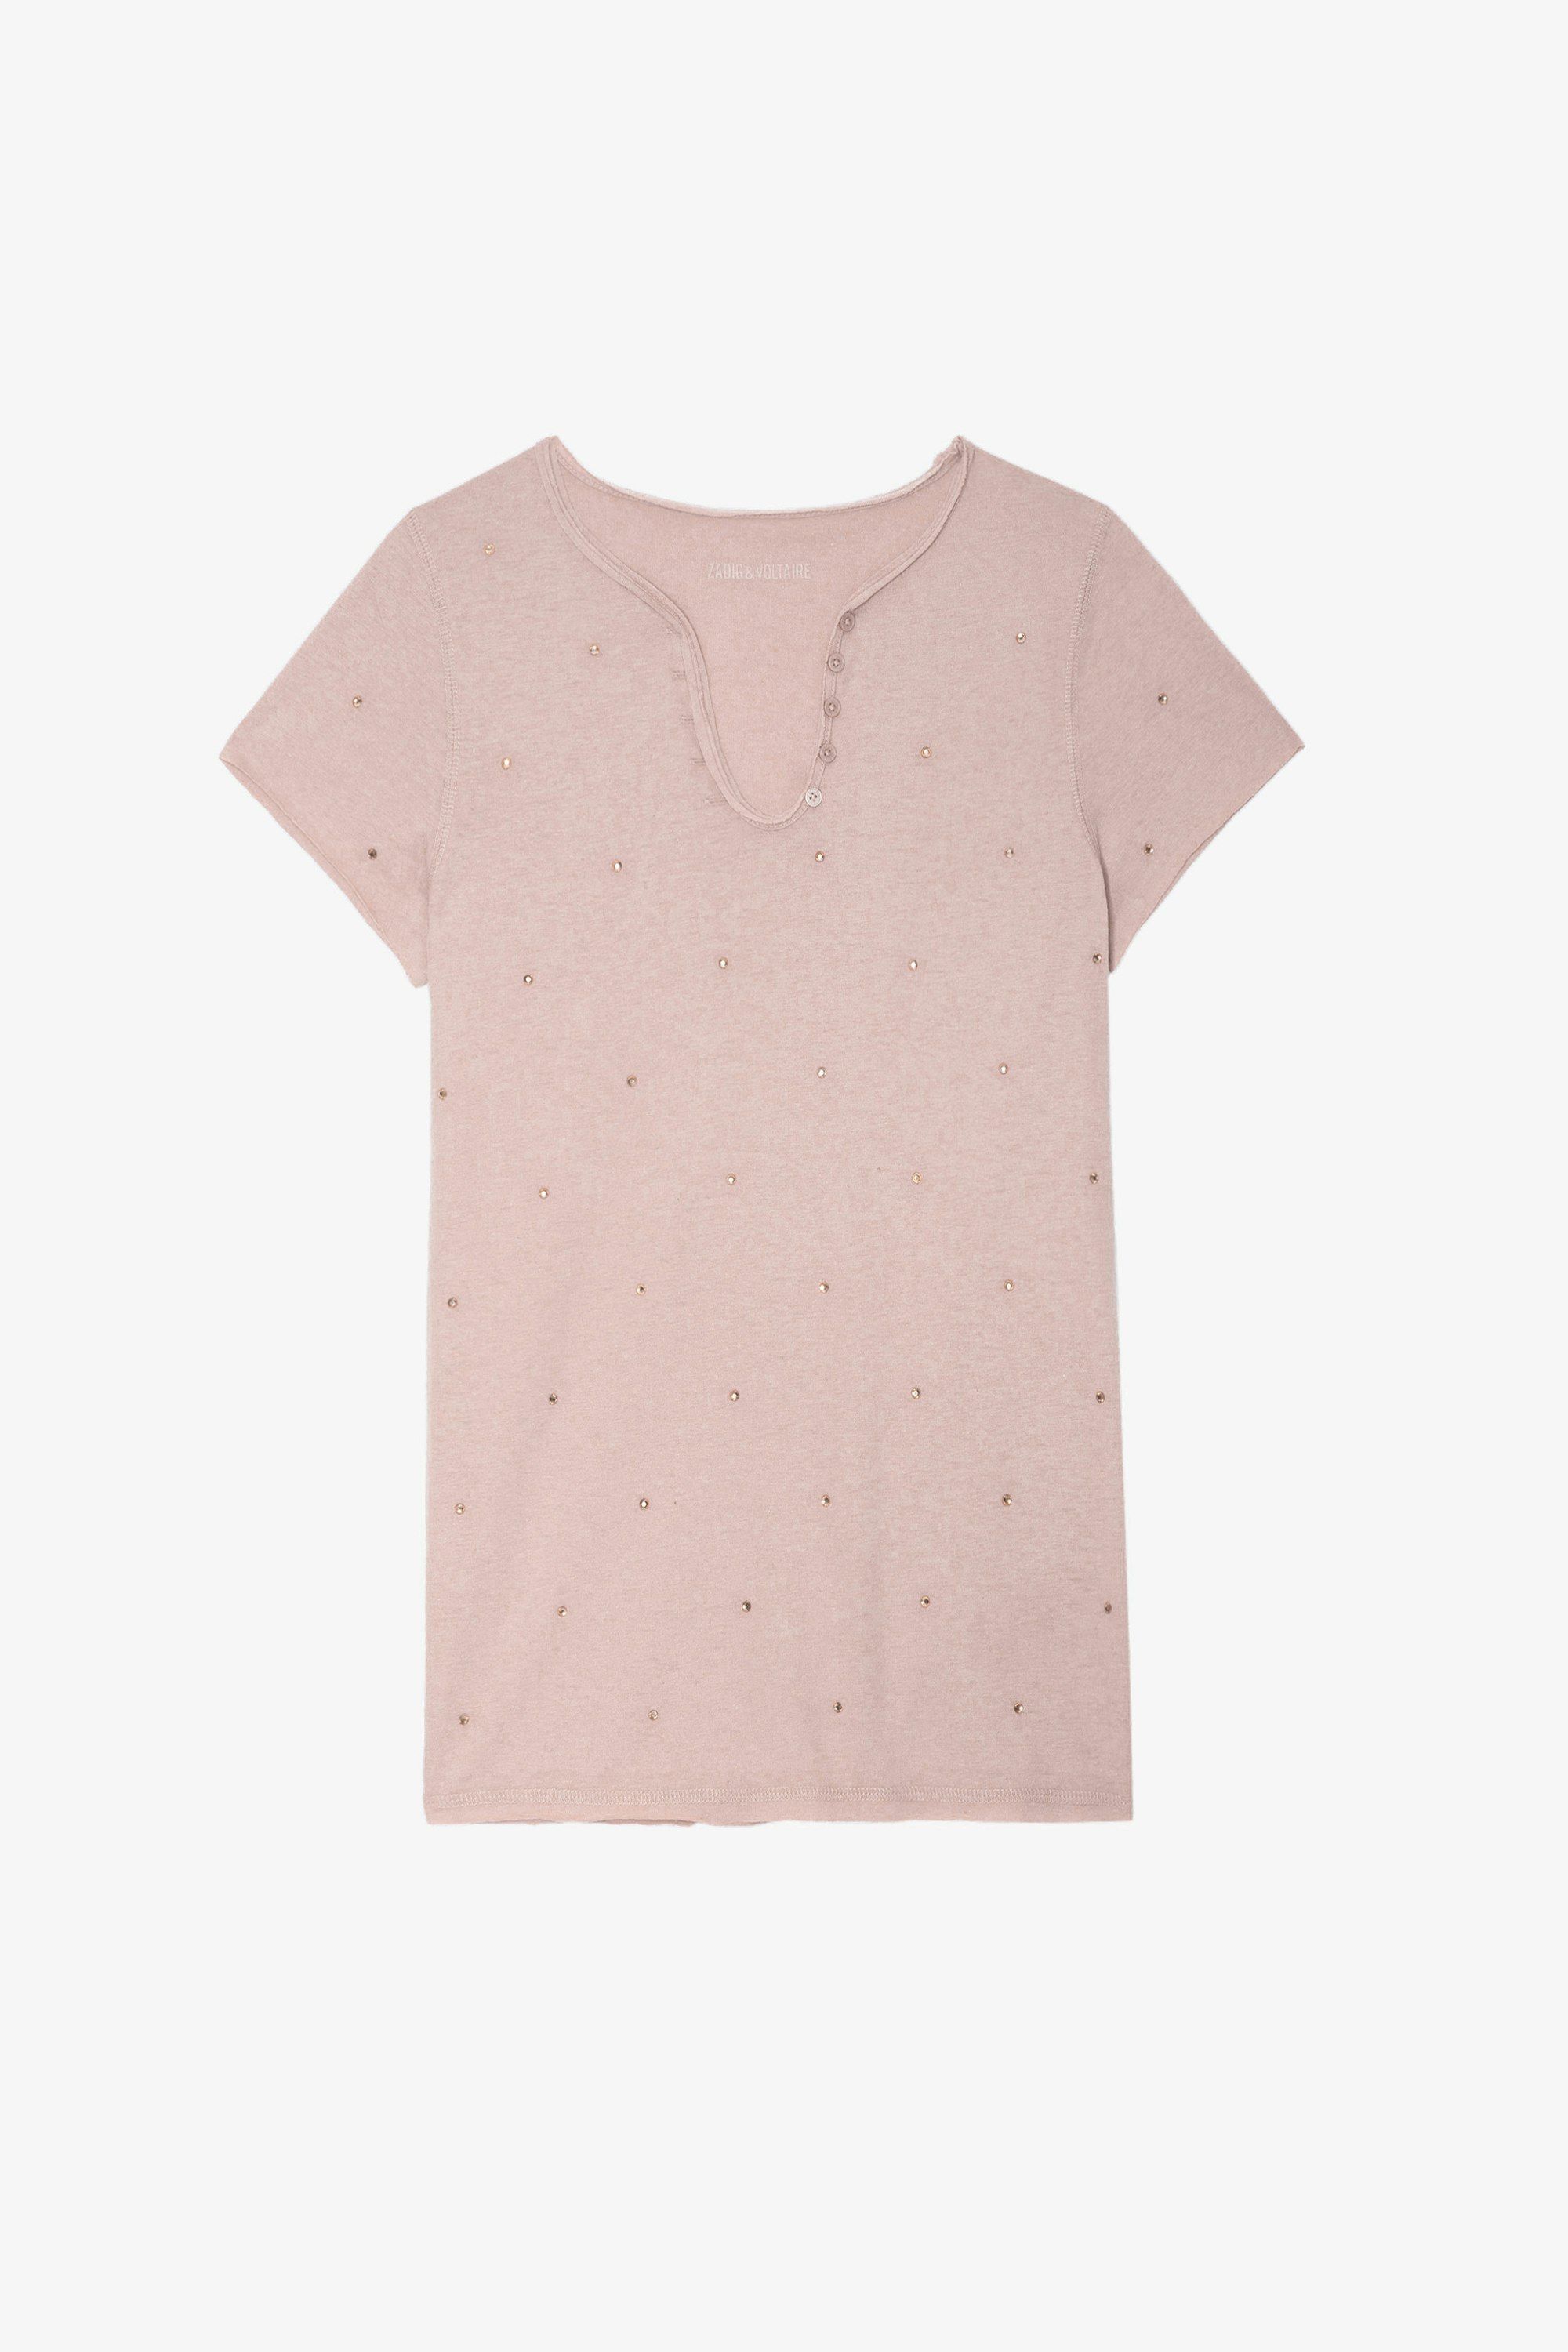 Diamanté Henley T-shirt - Women’s pink diamanté Henley T-shirt.